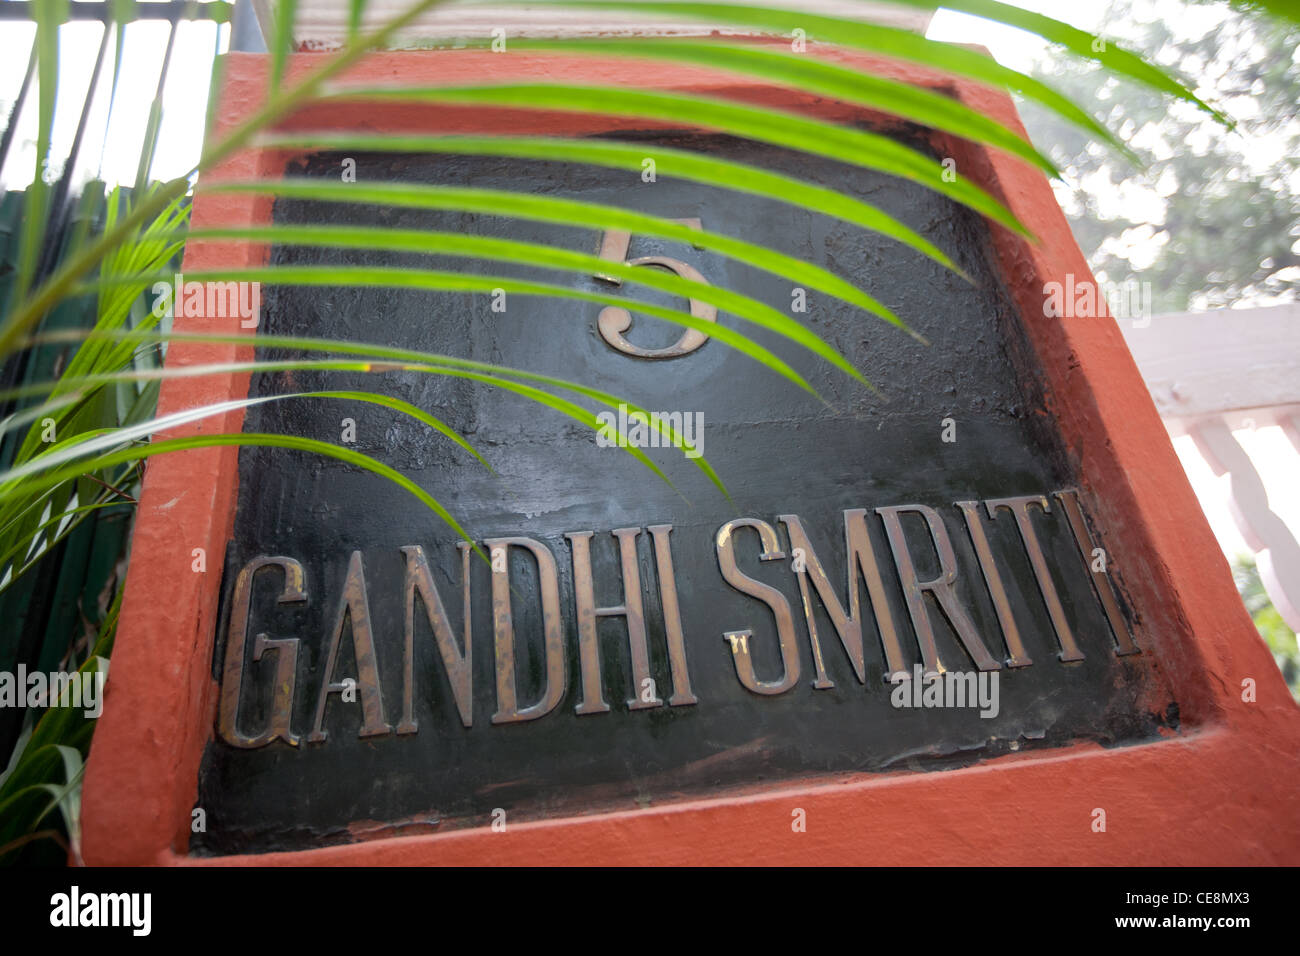 Gandhi Smriti, la casa de Mahatma Gandhi durante los últimos 144 días de su vida, antes de que fue baleado el 30 de enero de 1948, Nueva Delhi, India. Foto de stock